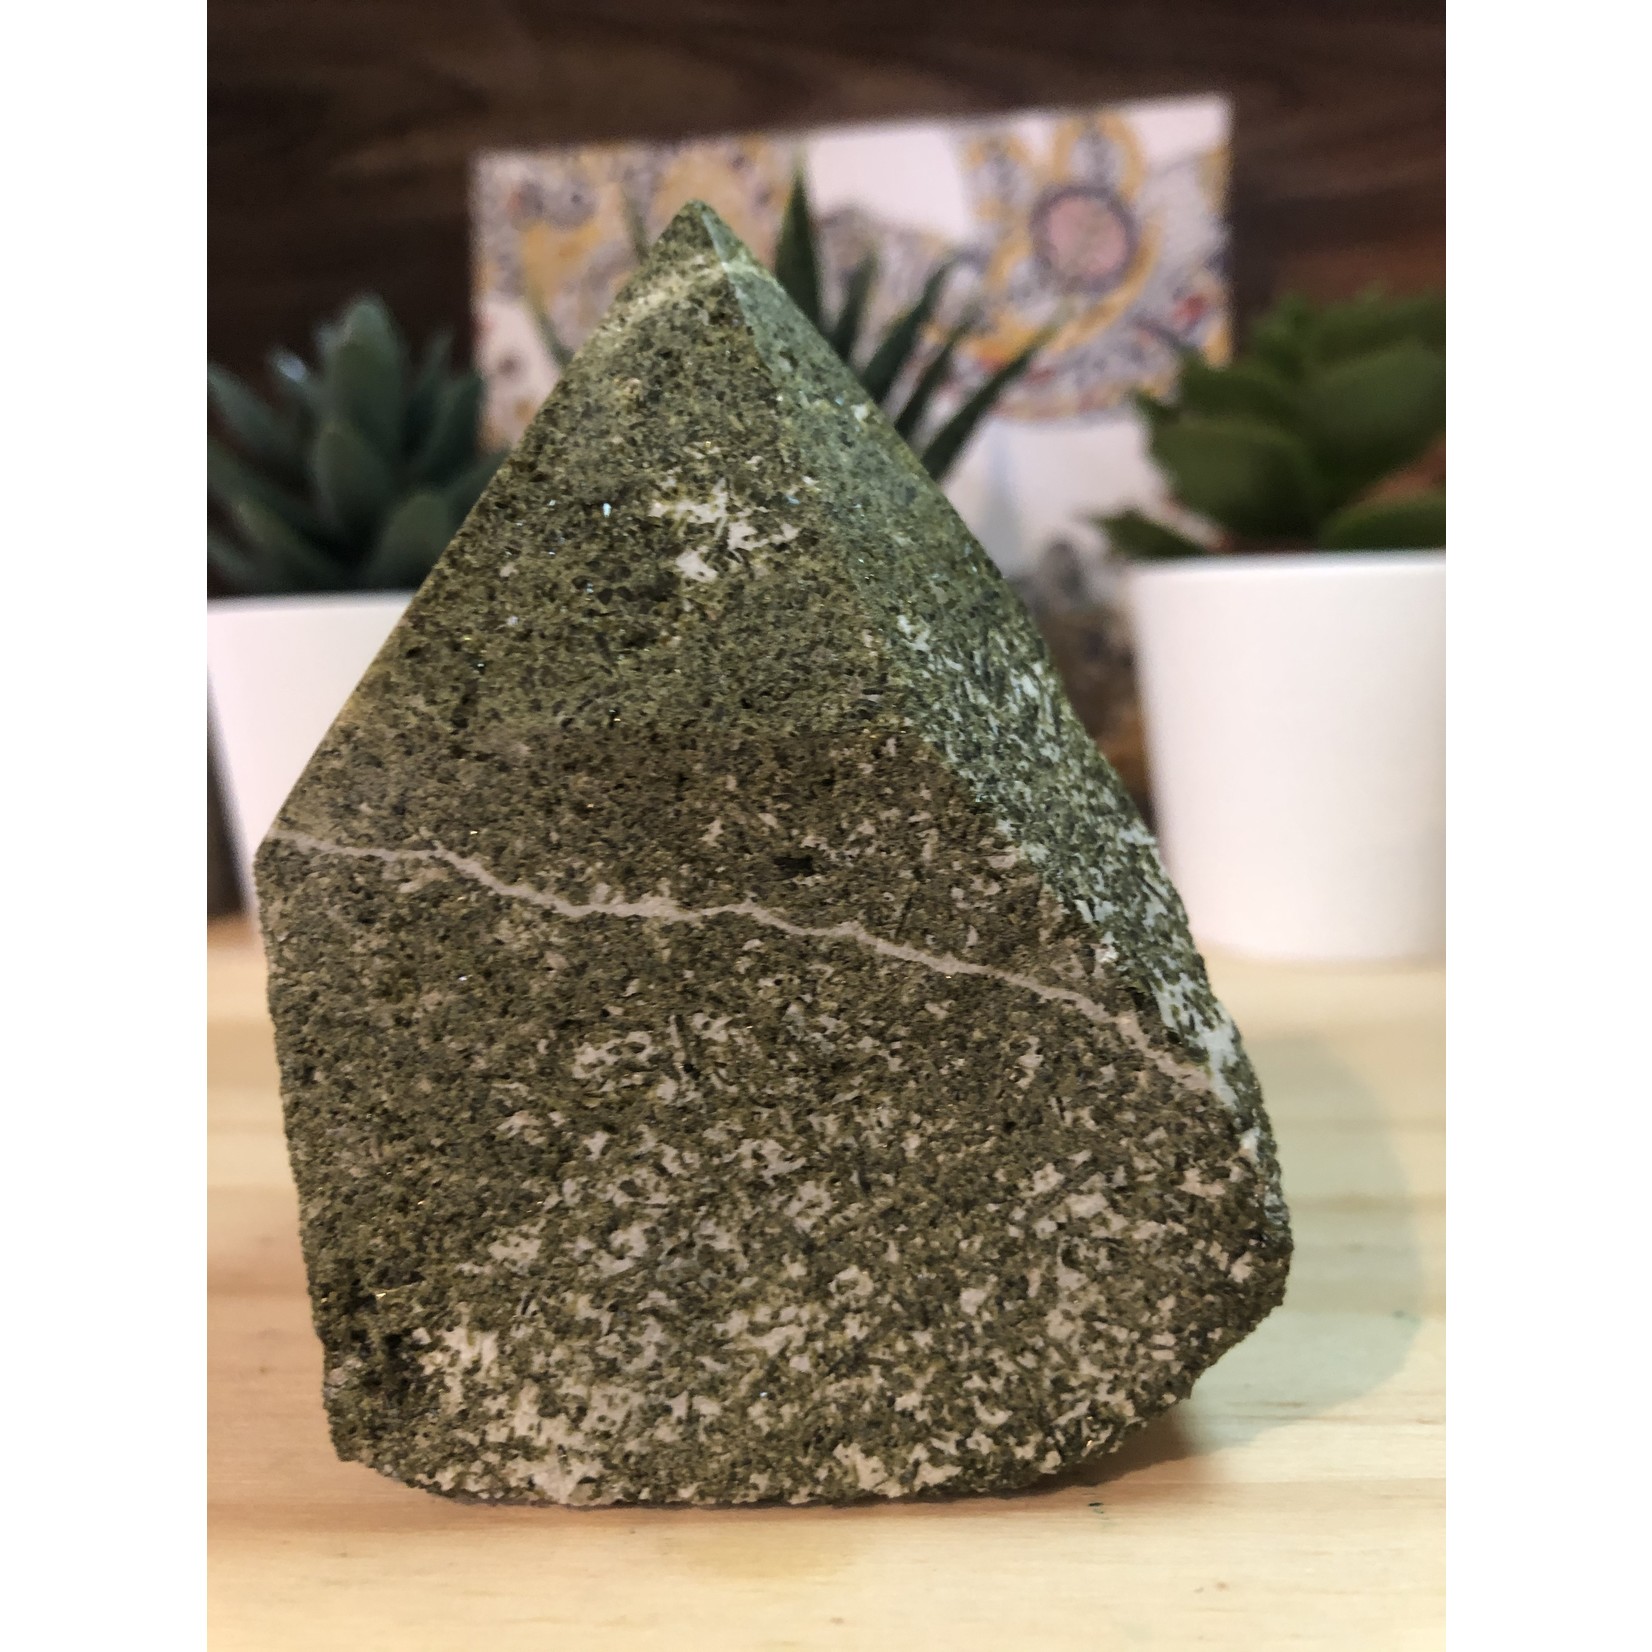 Polished Epidote Stone – Spiritual and Abundance Enhance